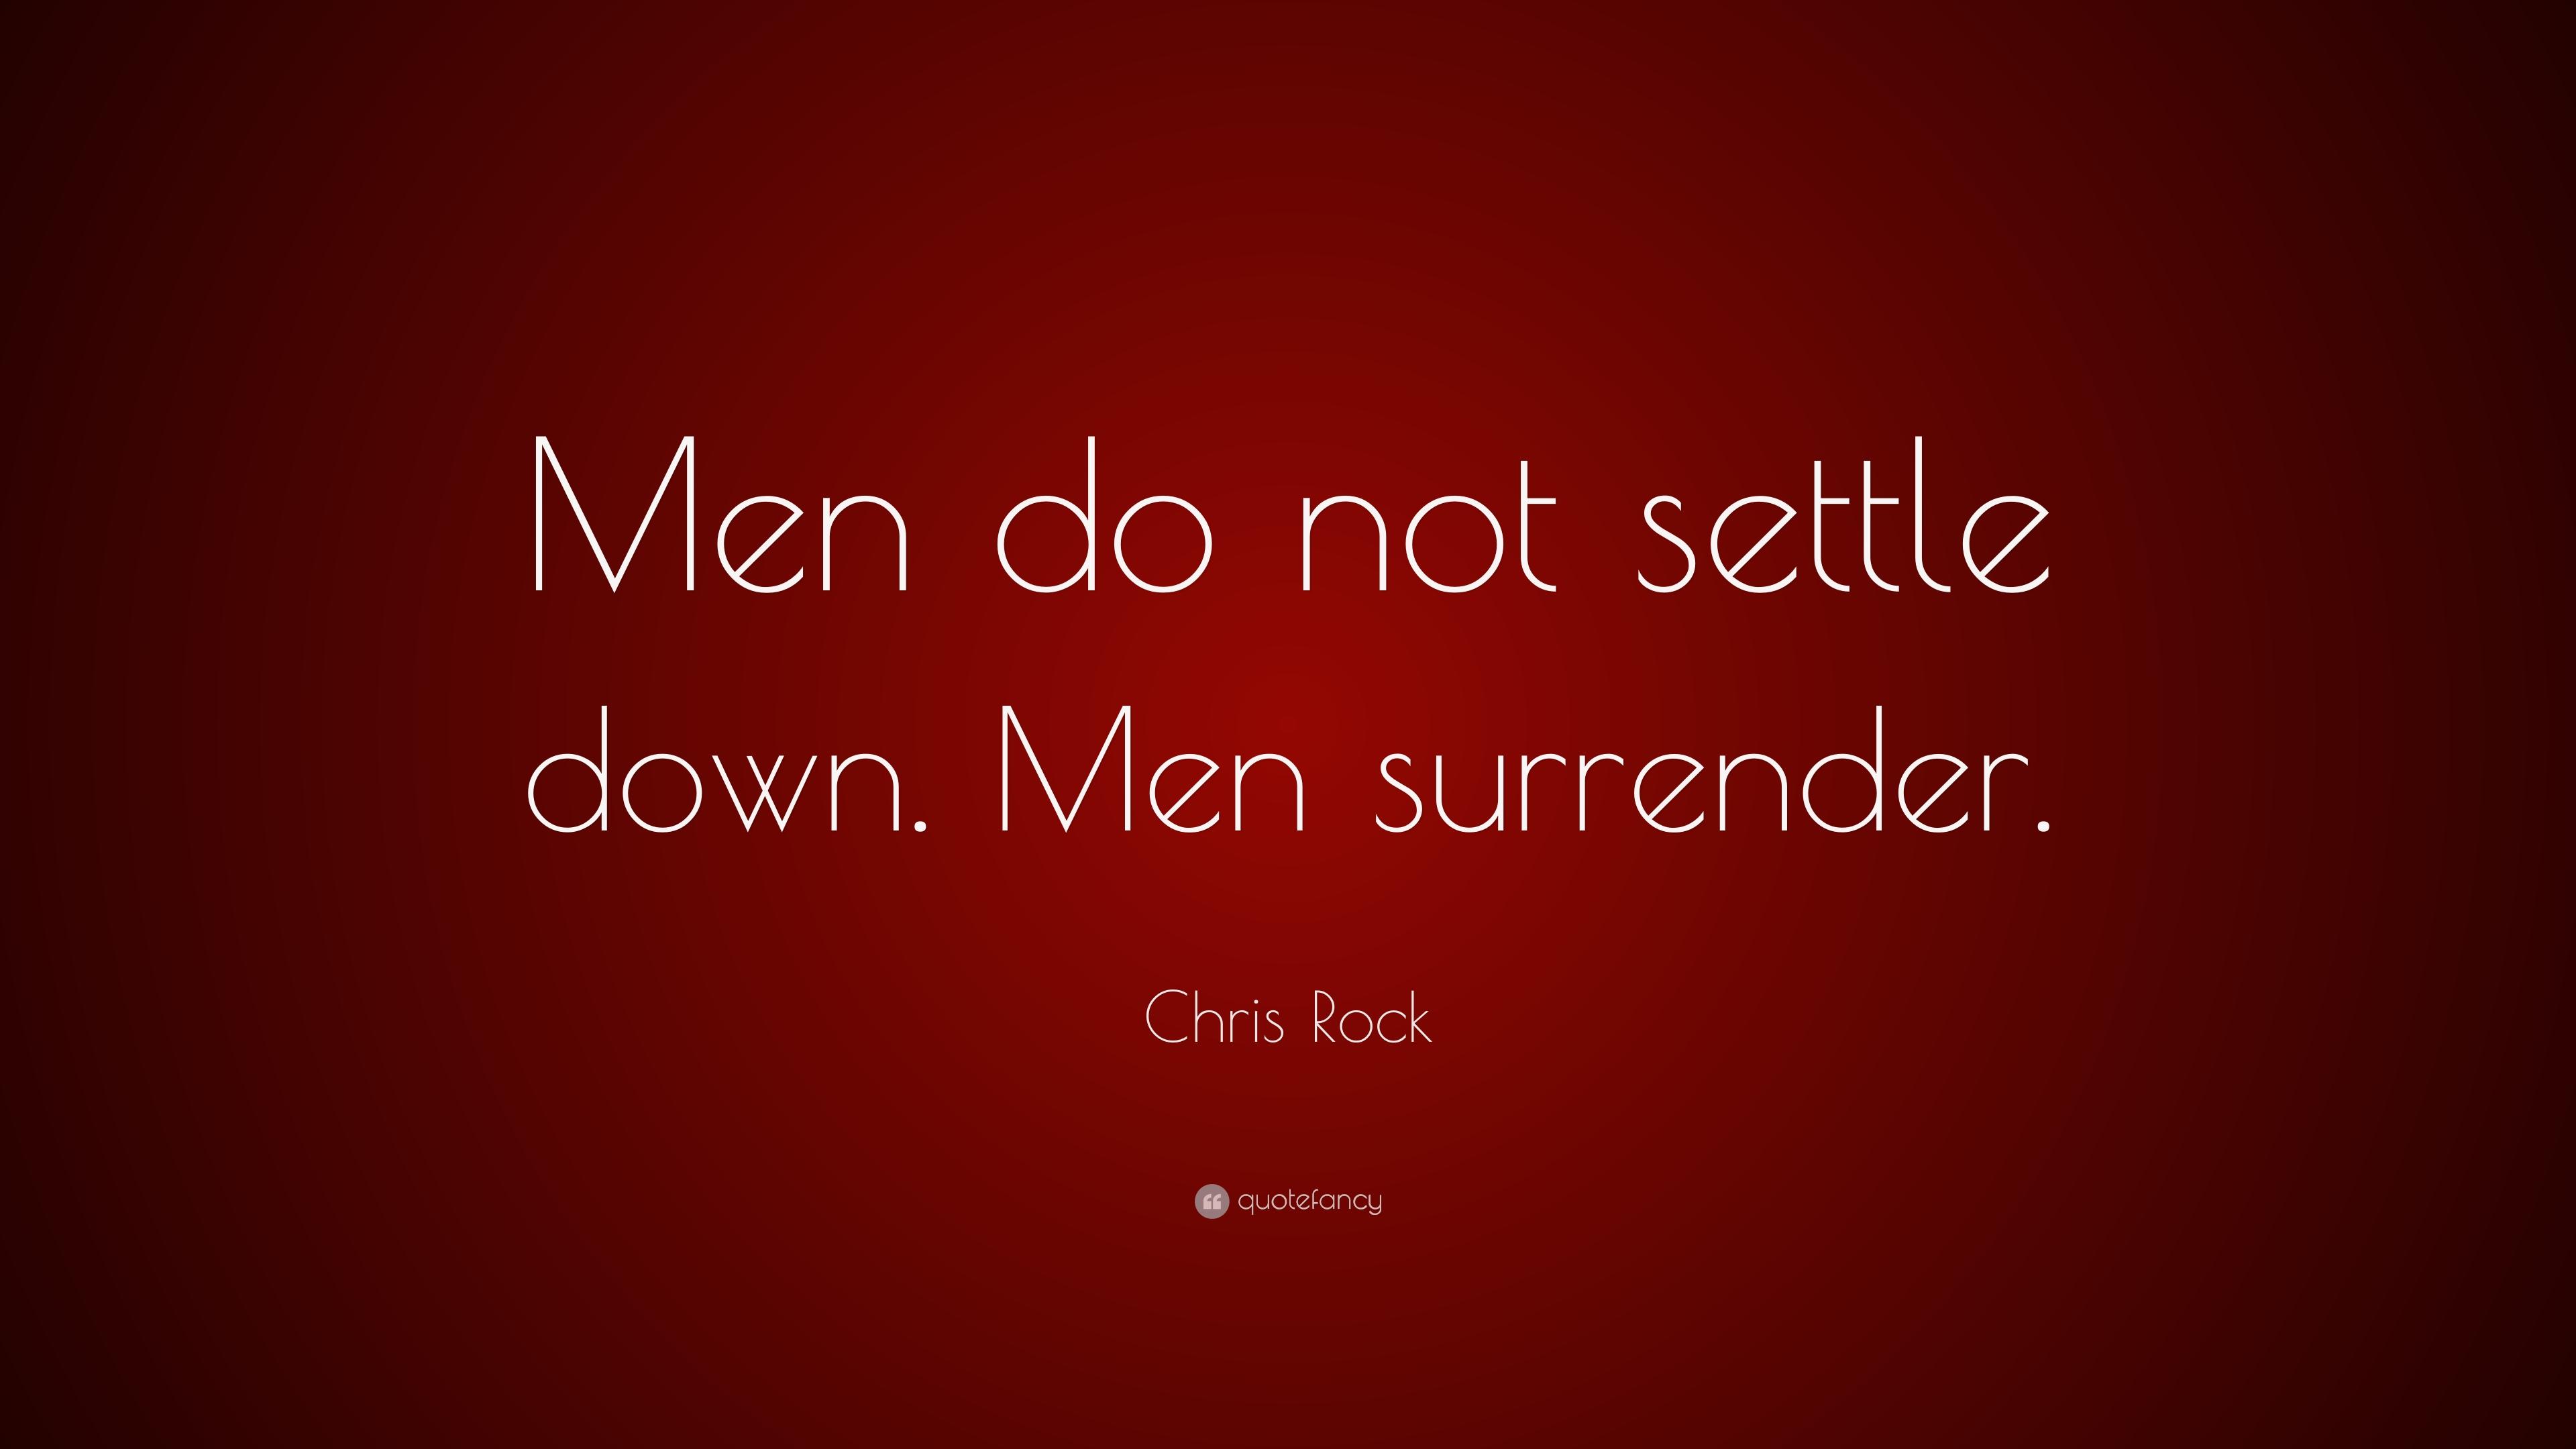 Chris Rock Quote: “Men do not settle down. Men surrender.” 10